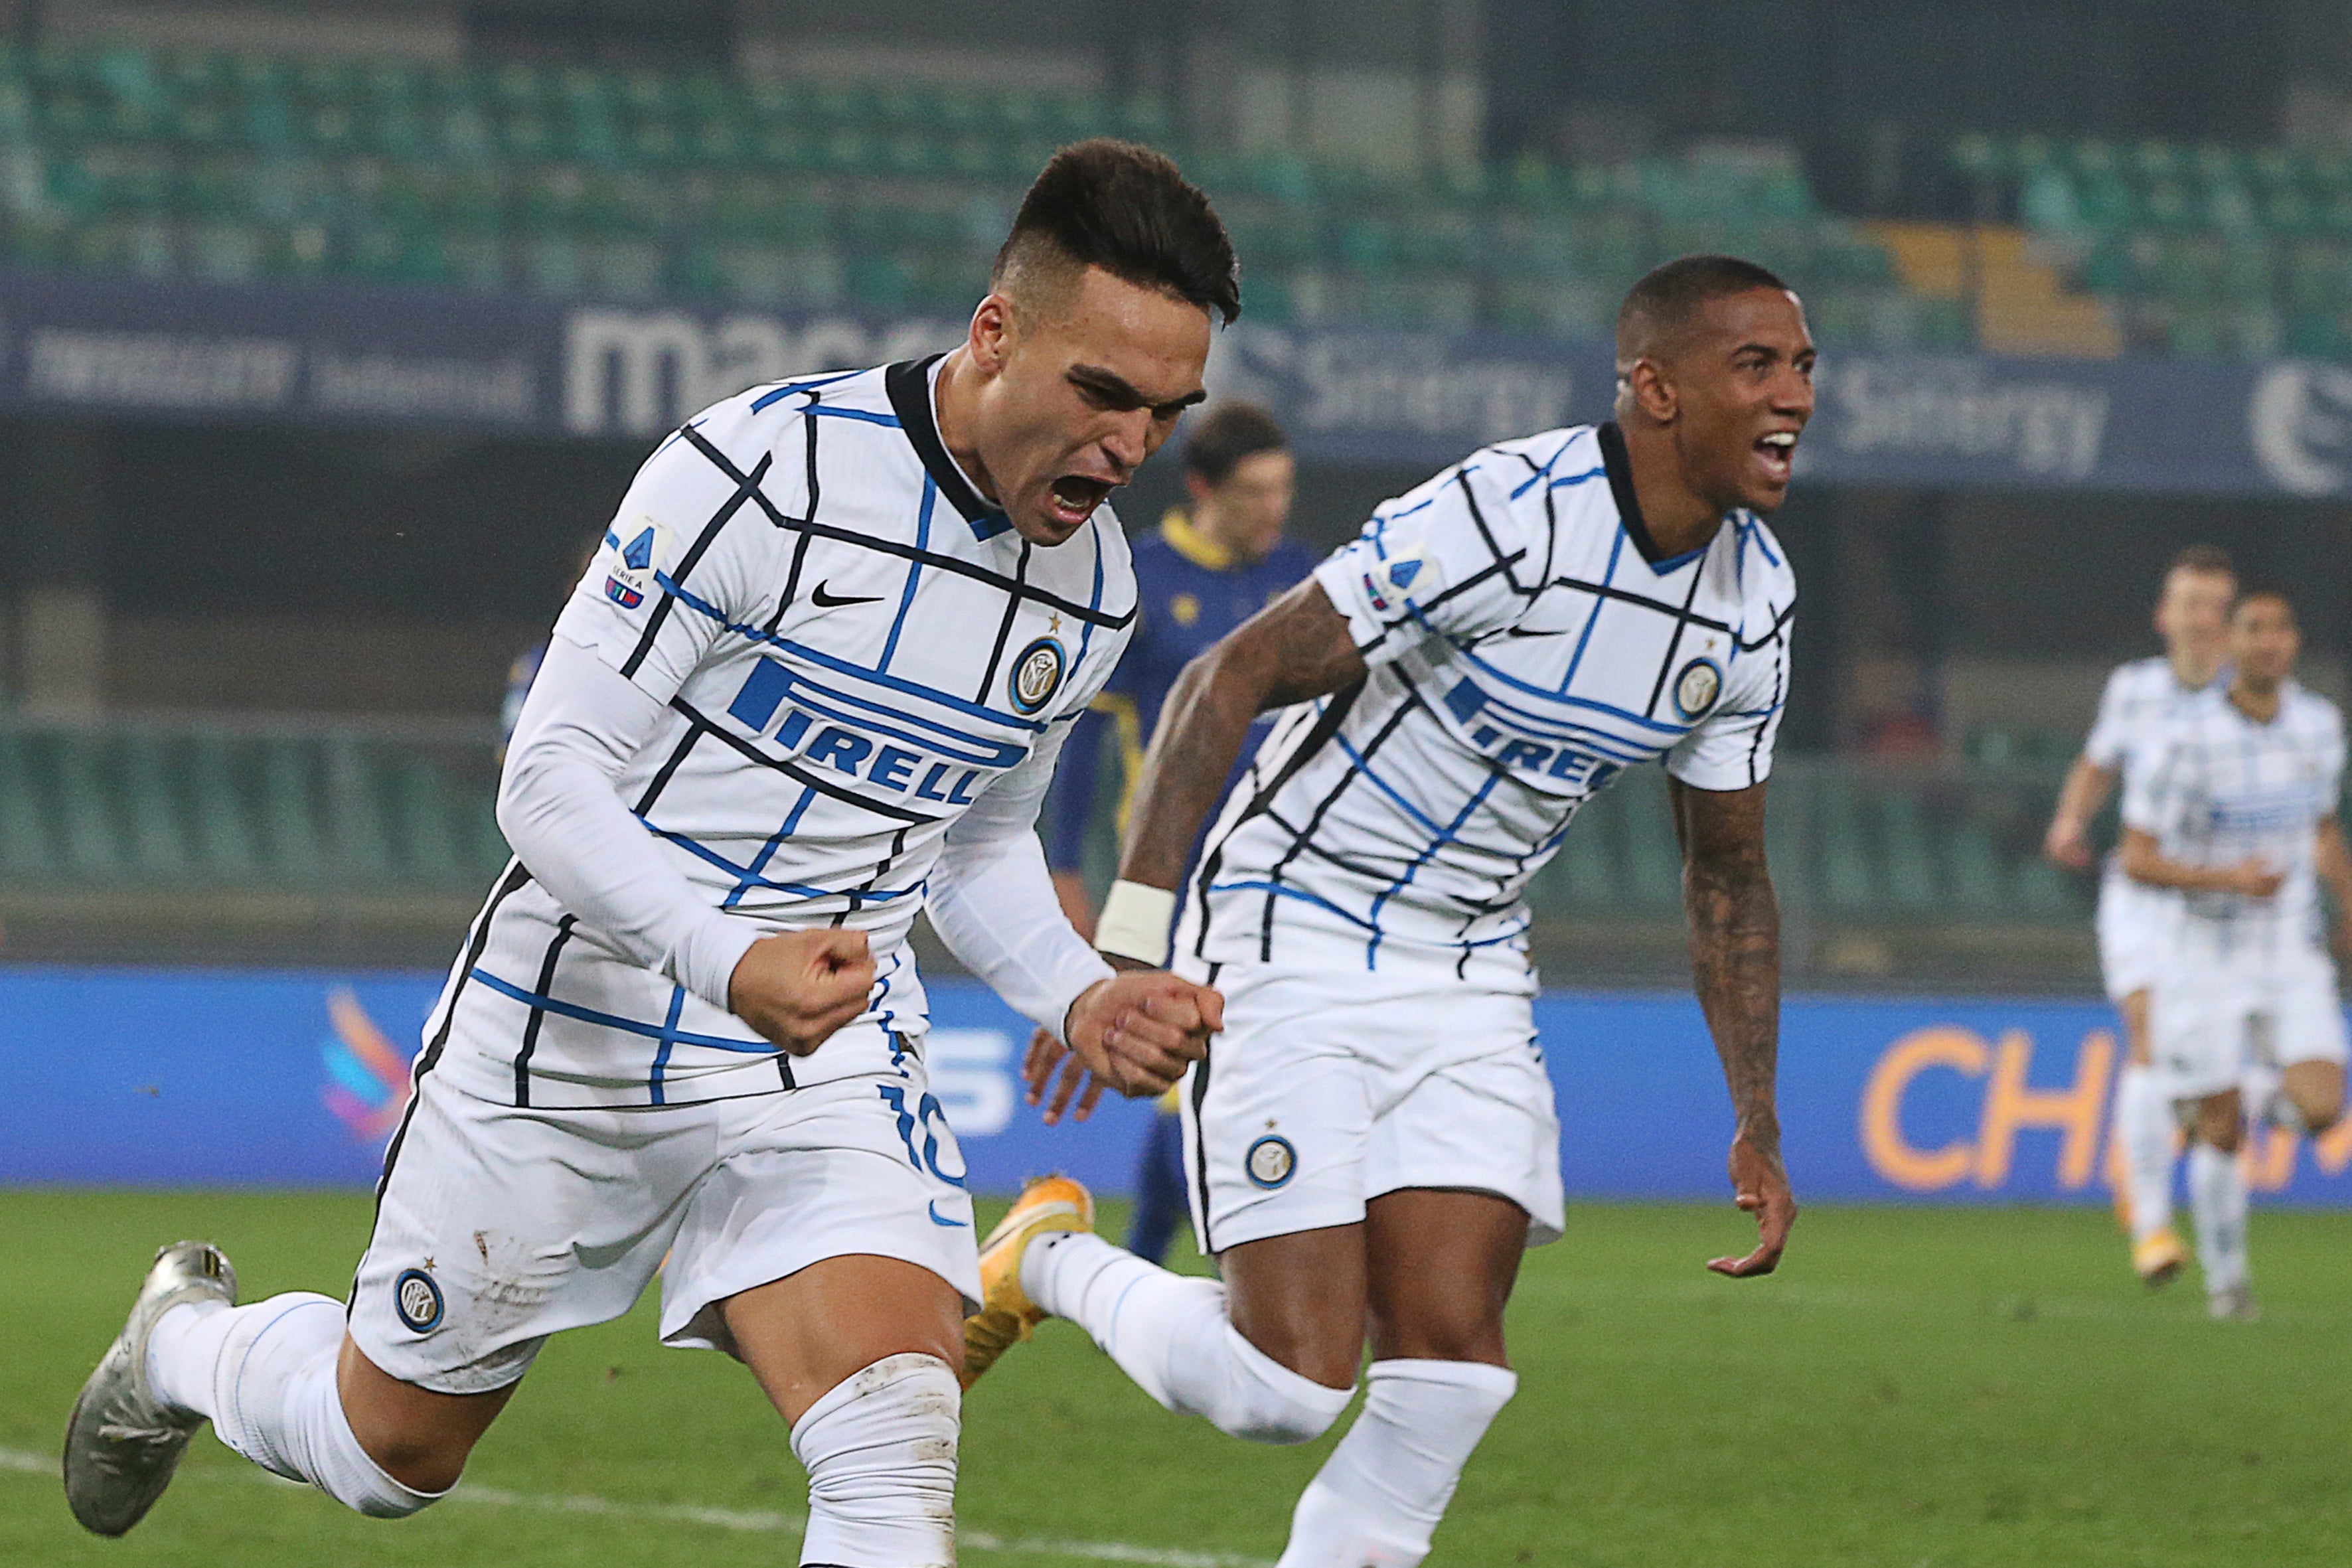 El delantero argentino del Inter de Milán Lautaro Martínez, izquierda, celebra tras anotar el primer gol del equipo en un partido de la Serie A italiana contra Verona el miércoles, 23 de diciembre del 2020.&nbsp;